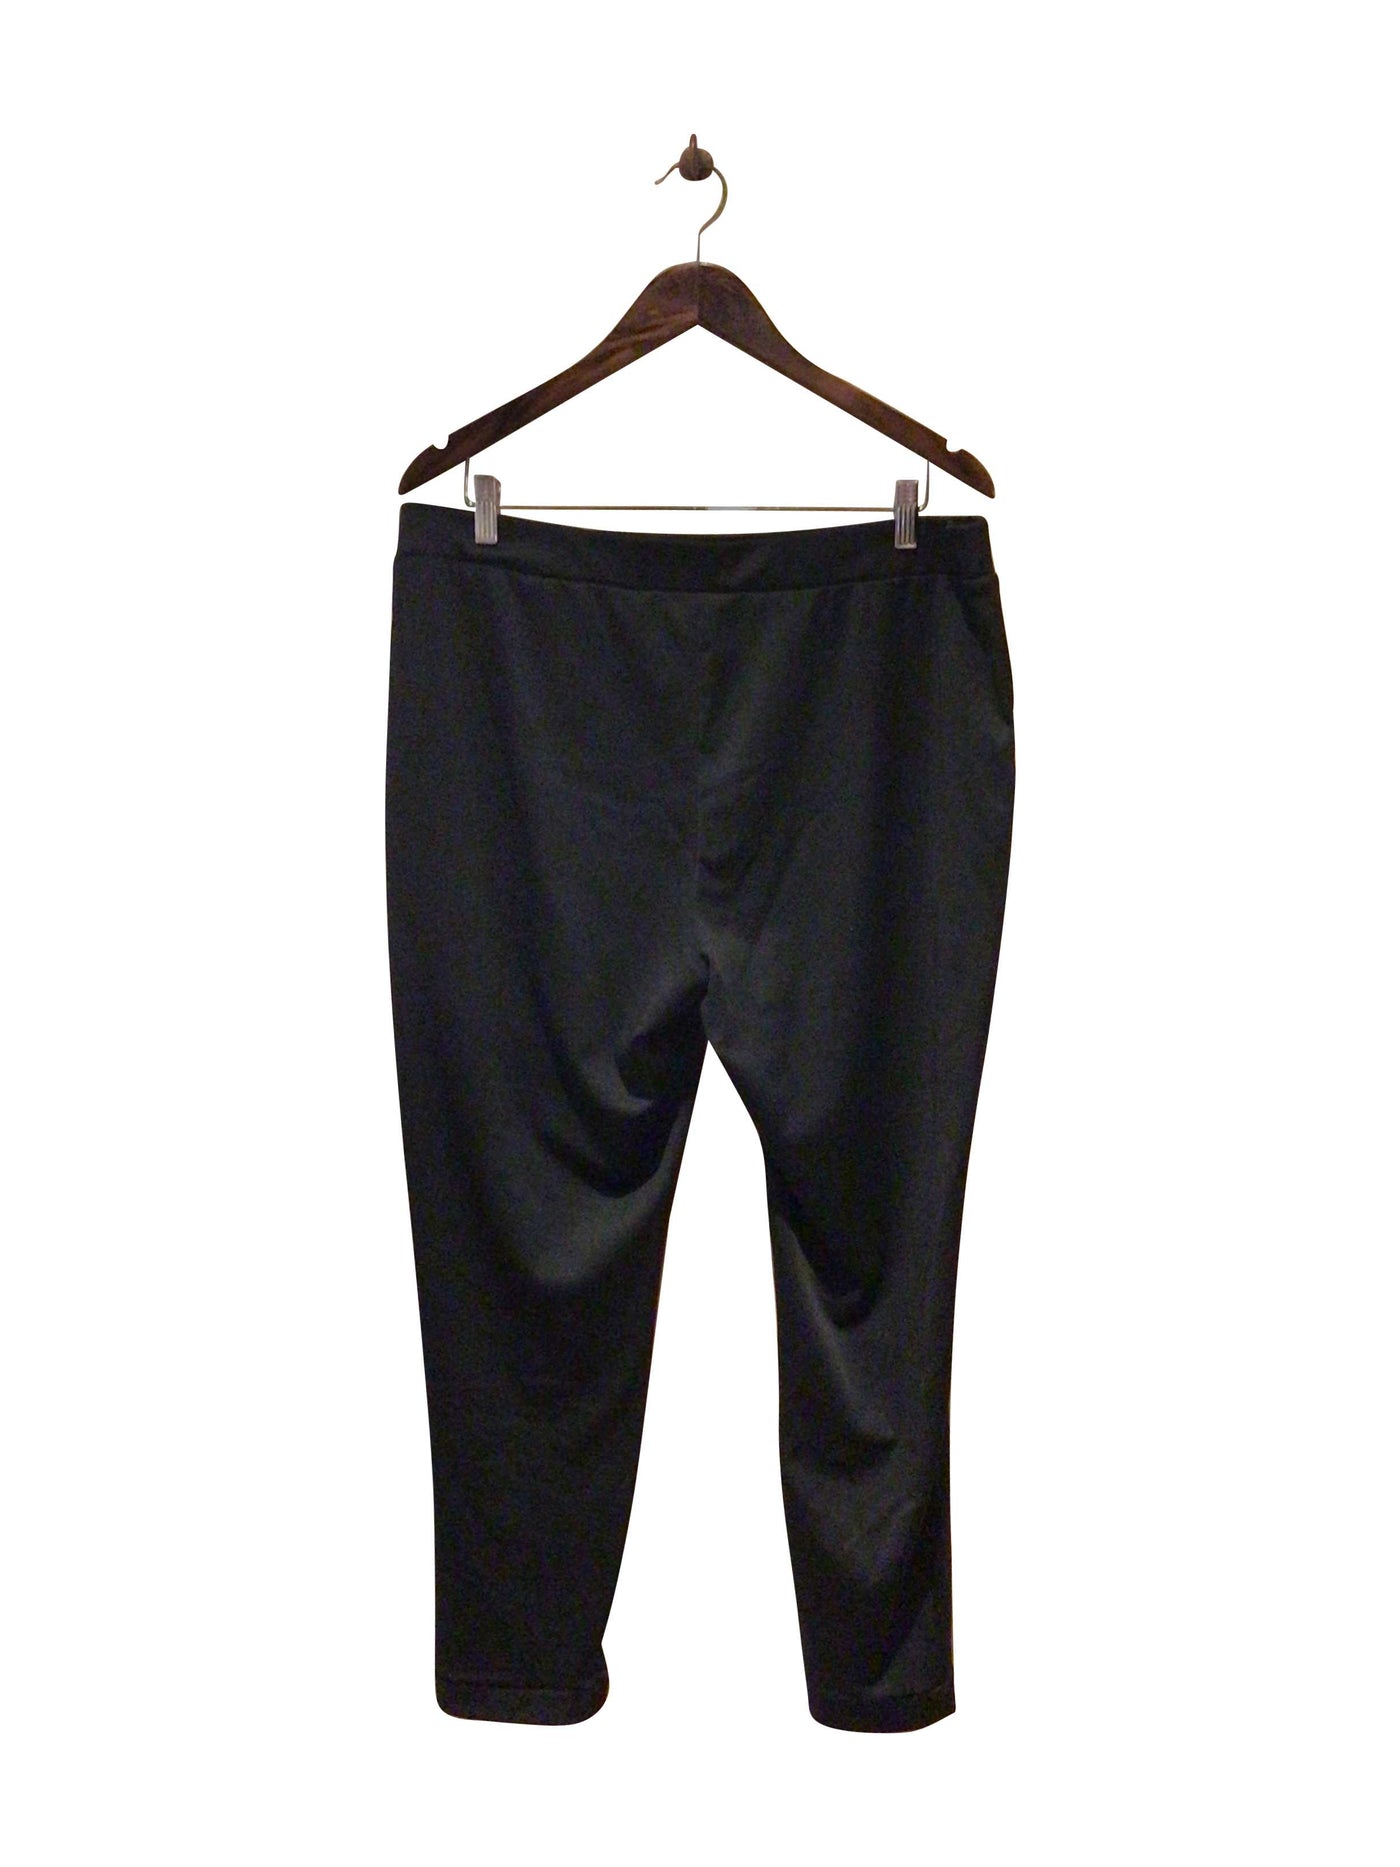 SHEIN Regular fit Pant in Black  -  3XL  13.99 Koop